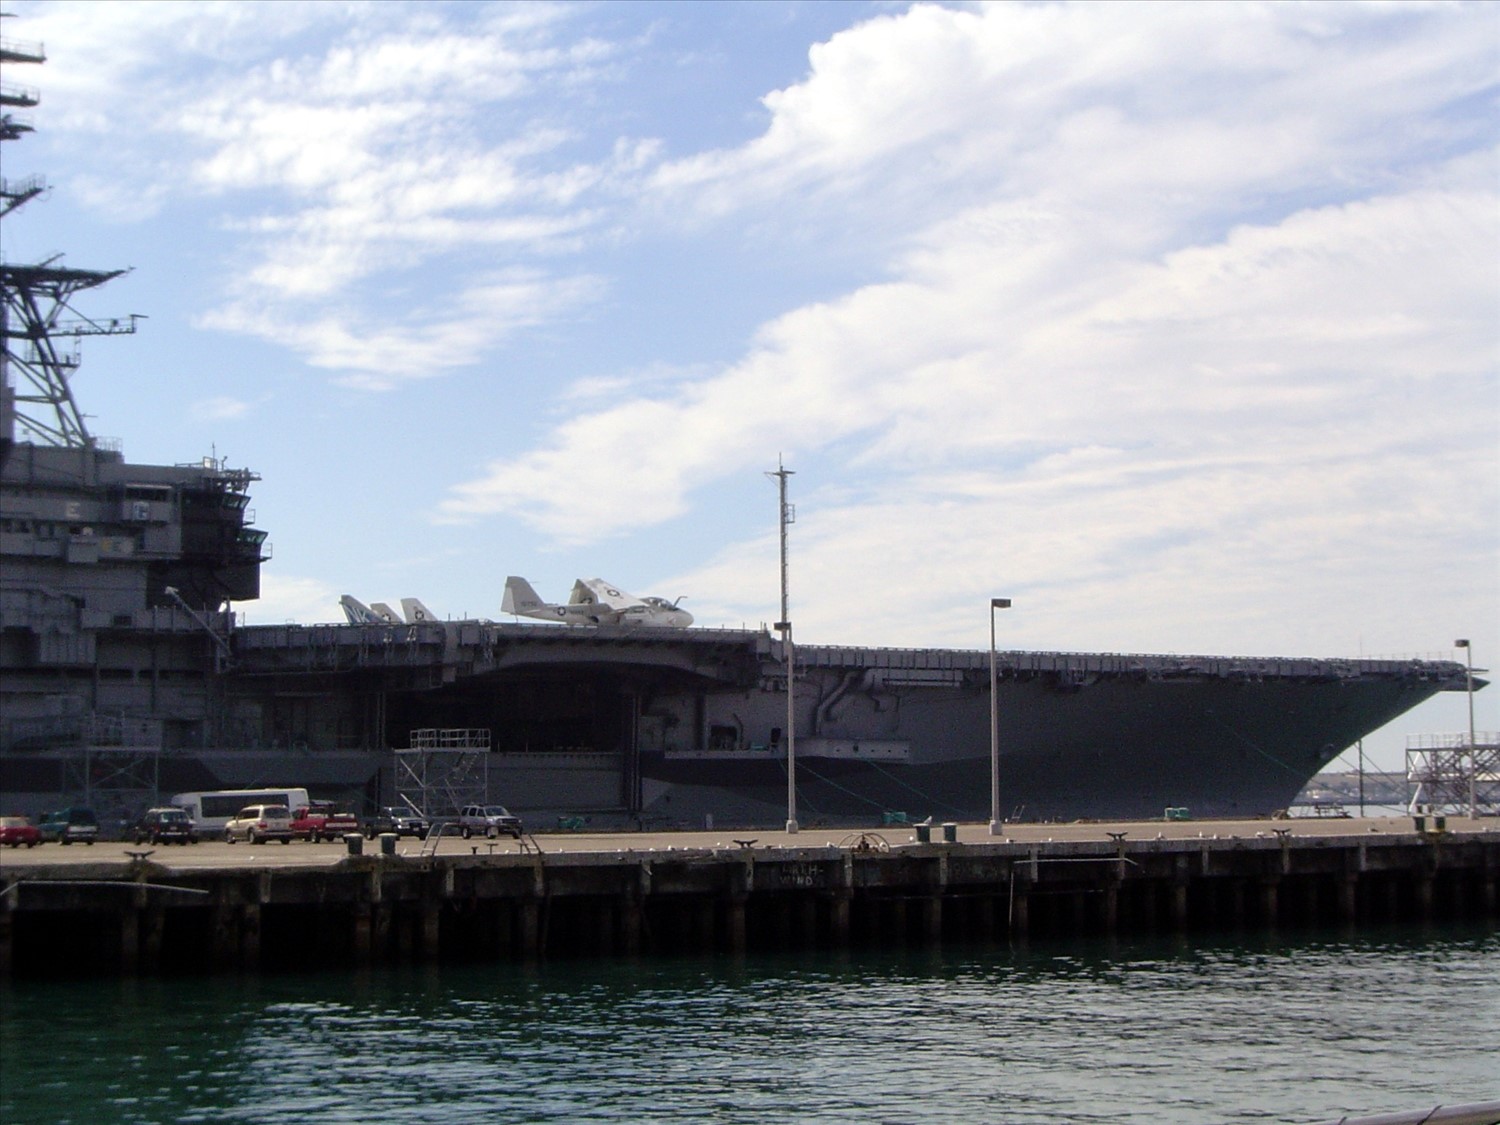 Closer view of an aircraft carrier. DSC00544.jpg. Uploaded by Erik Hoffmann on 2/24/2004. 